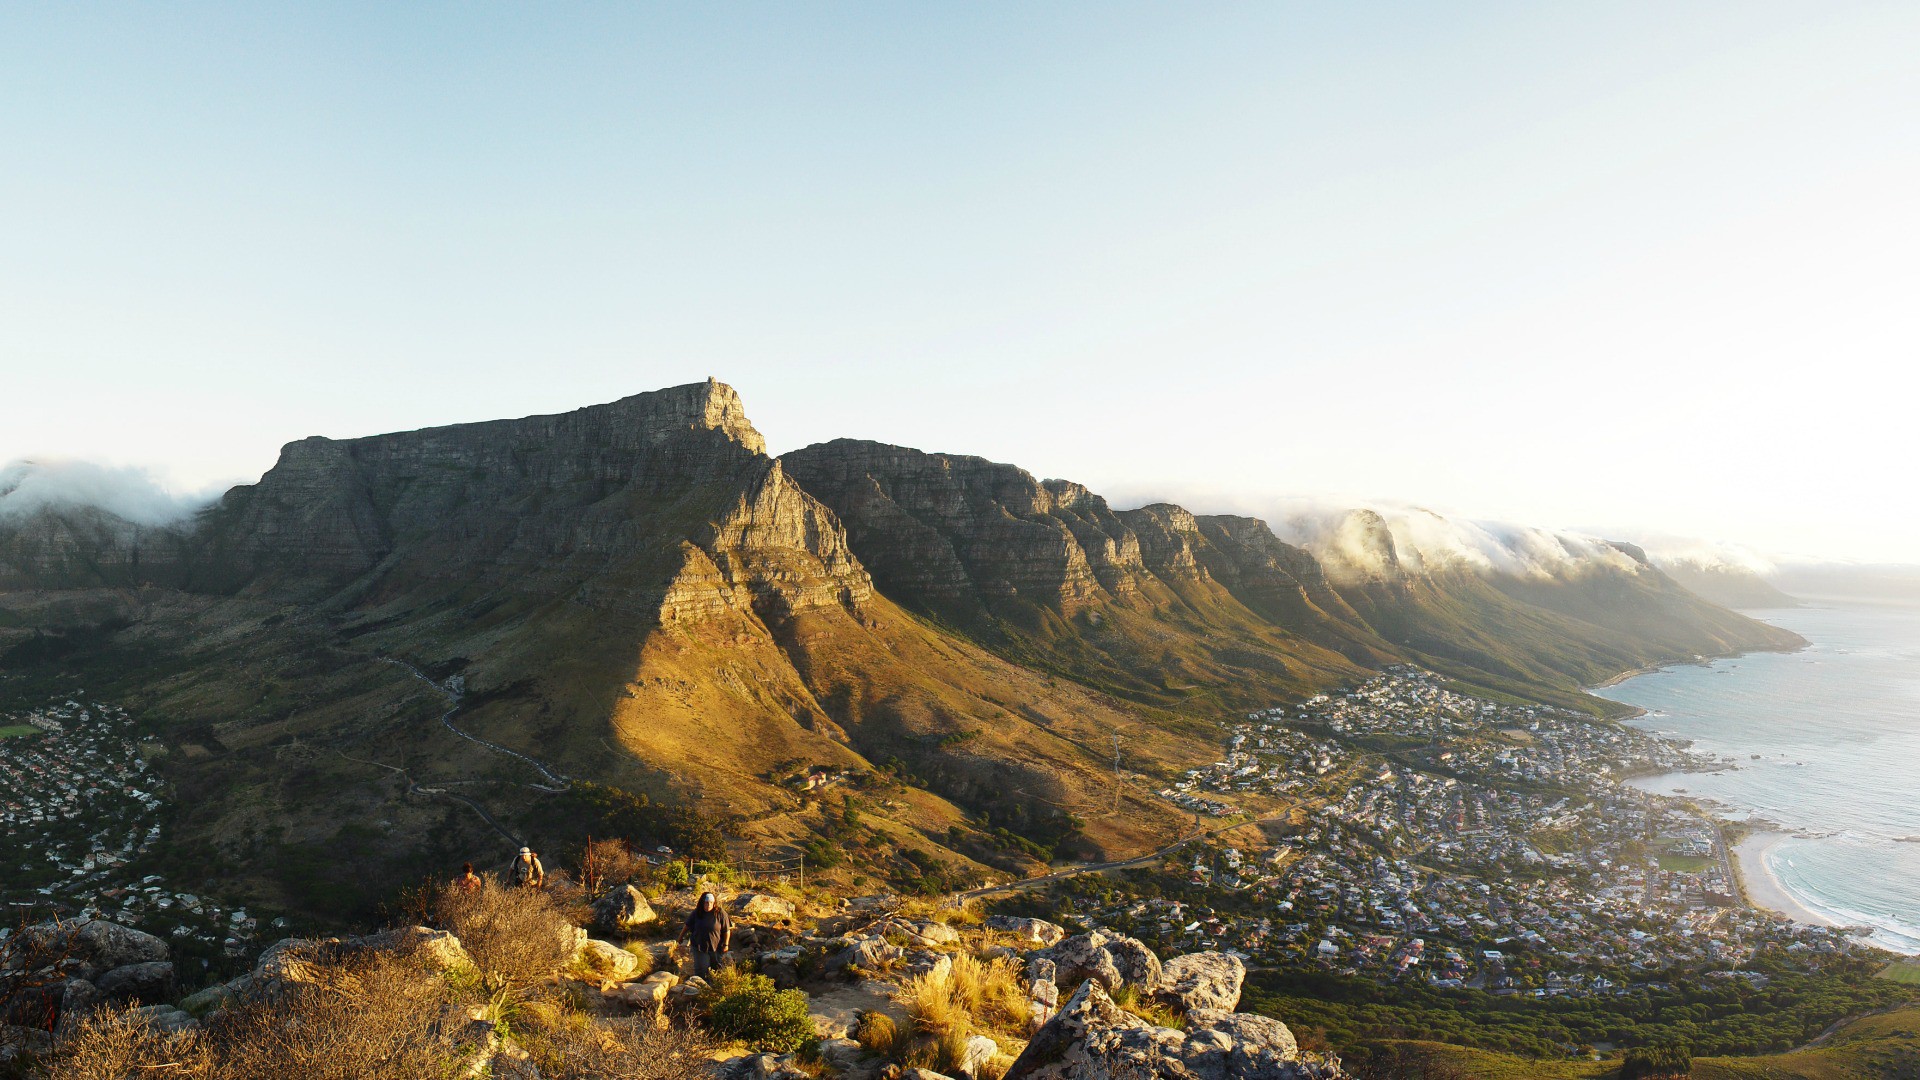 Vue de la région du Cap, en Afrique du Sud (Photo:Damien du Toit/Flickr/CC BY 2.0)